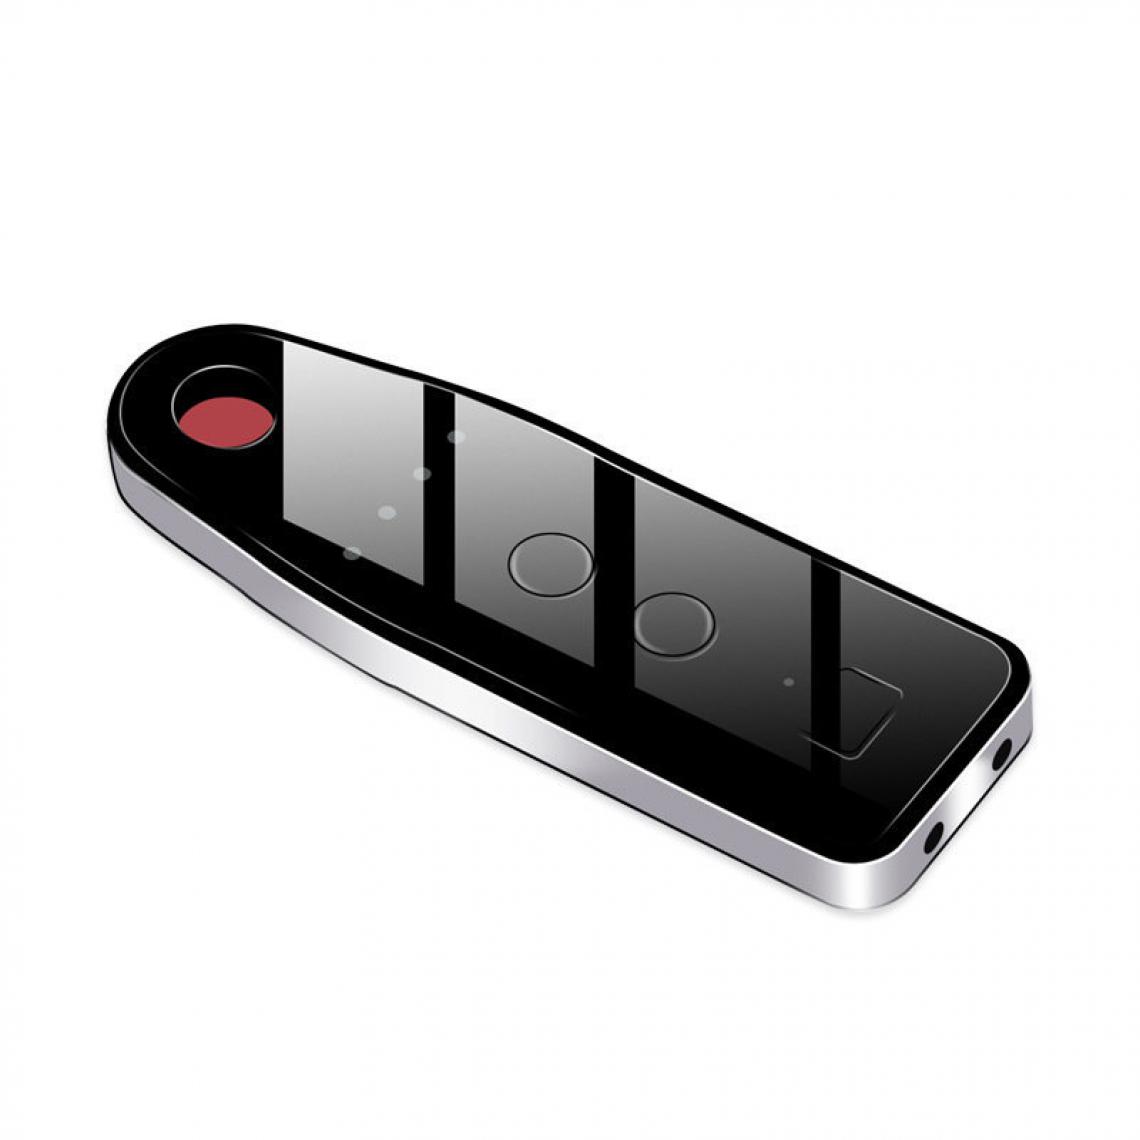 Chrono - Détecteur Caméra Anti-Spy Portable, 4 Réglage de la fréquence Libre Détecteur Caméra détecteur de Signal Anti-Sneak Tir Anti-Eavesdrop Sound + Vibration Alarmï¼noirï¼ - Autres accessoires smartphone